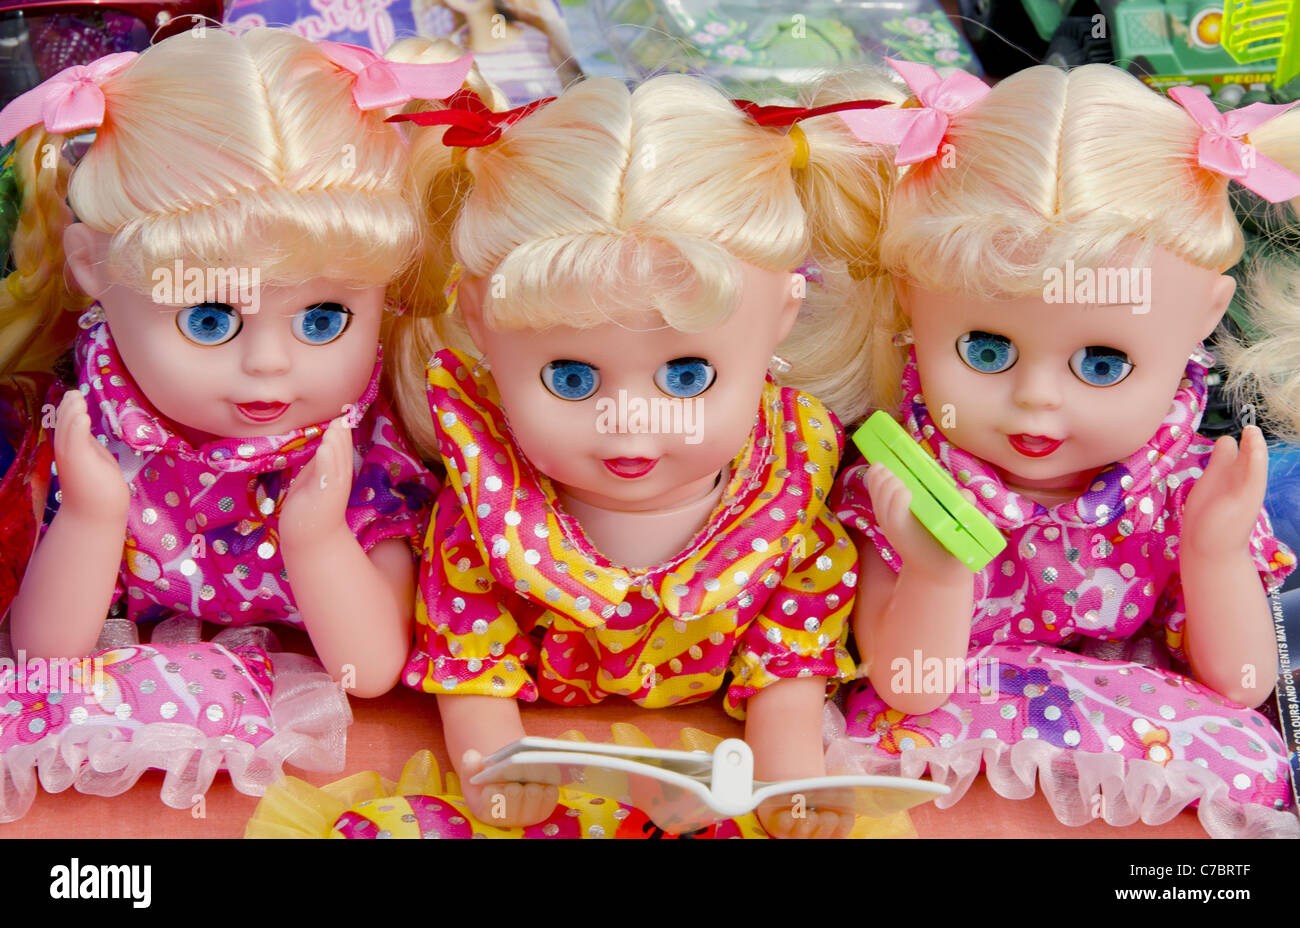 Triplett. Drei farbenfrohe Puppen verkauft auf Outdoor-Fair-Trade. Spielzeug für Kinder. Trinity. Stockfoto